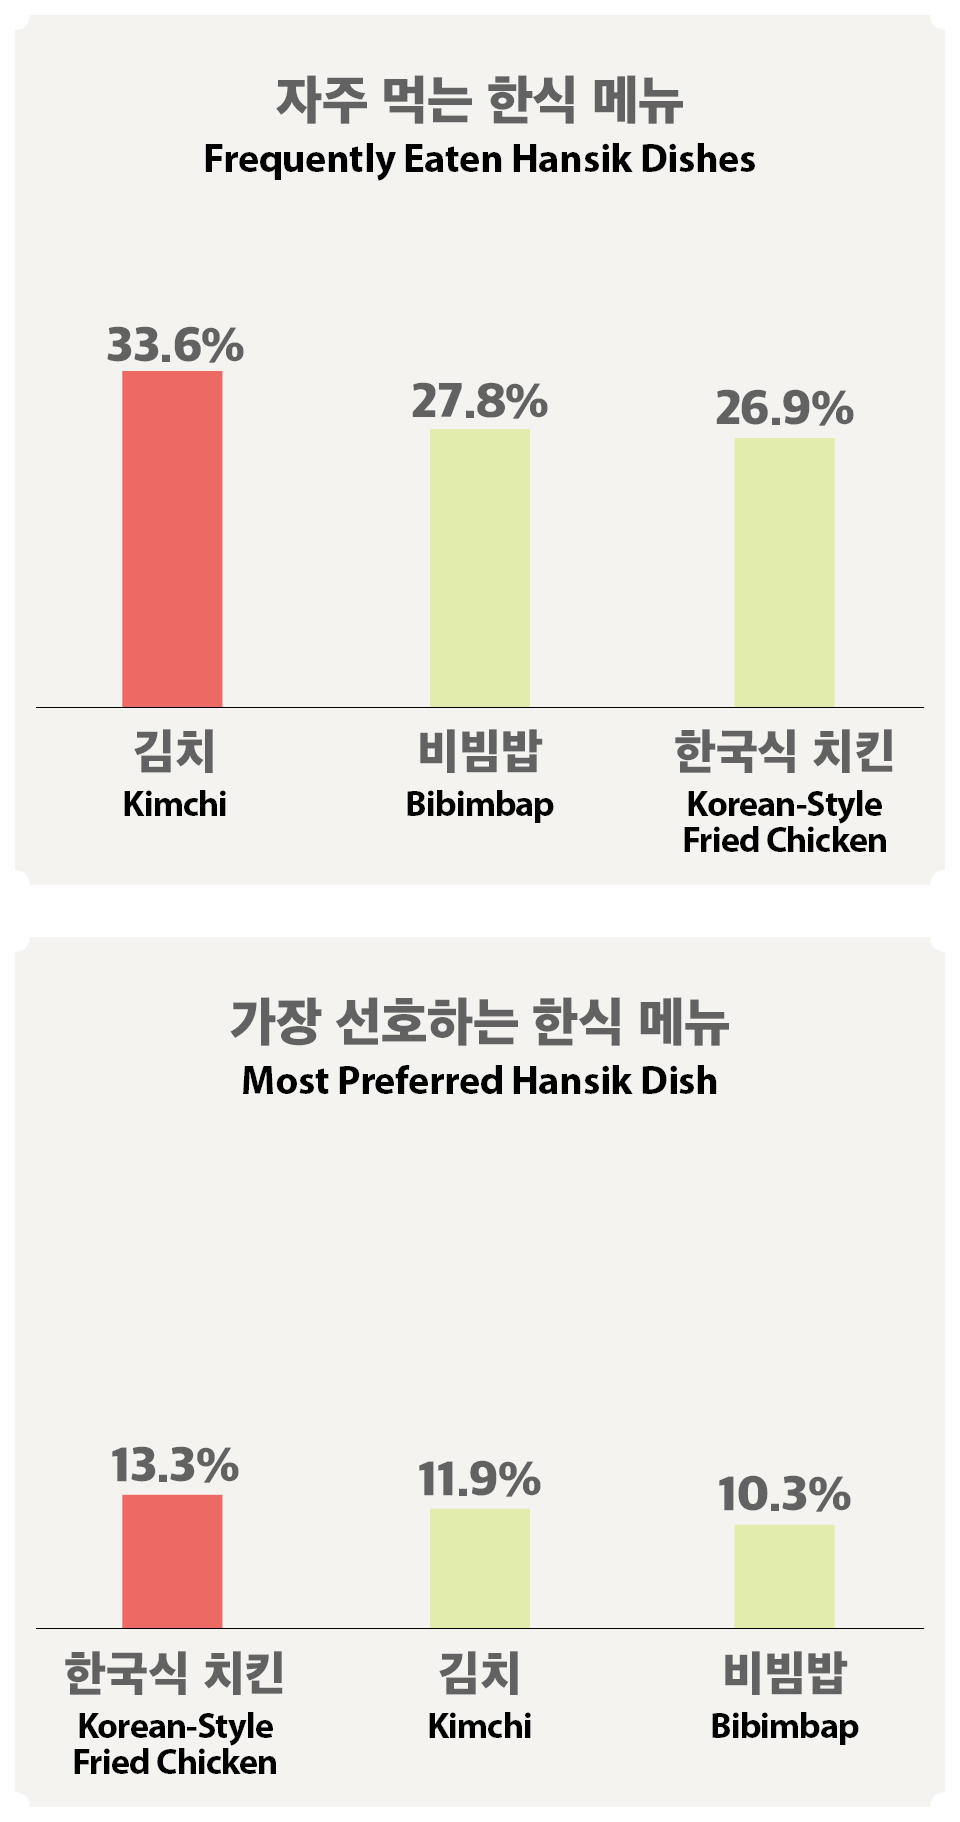 [Infographic] 해외에서 자주 먹는 한식은 김치, 선호하는 한식은 <font color='red'>치킨</font>